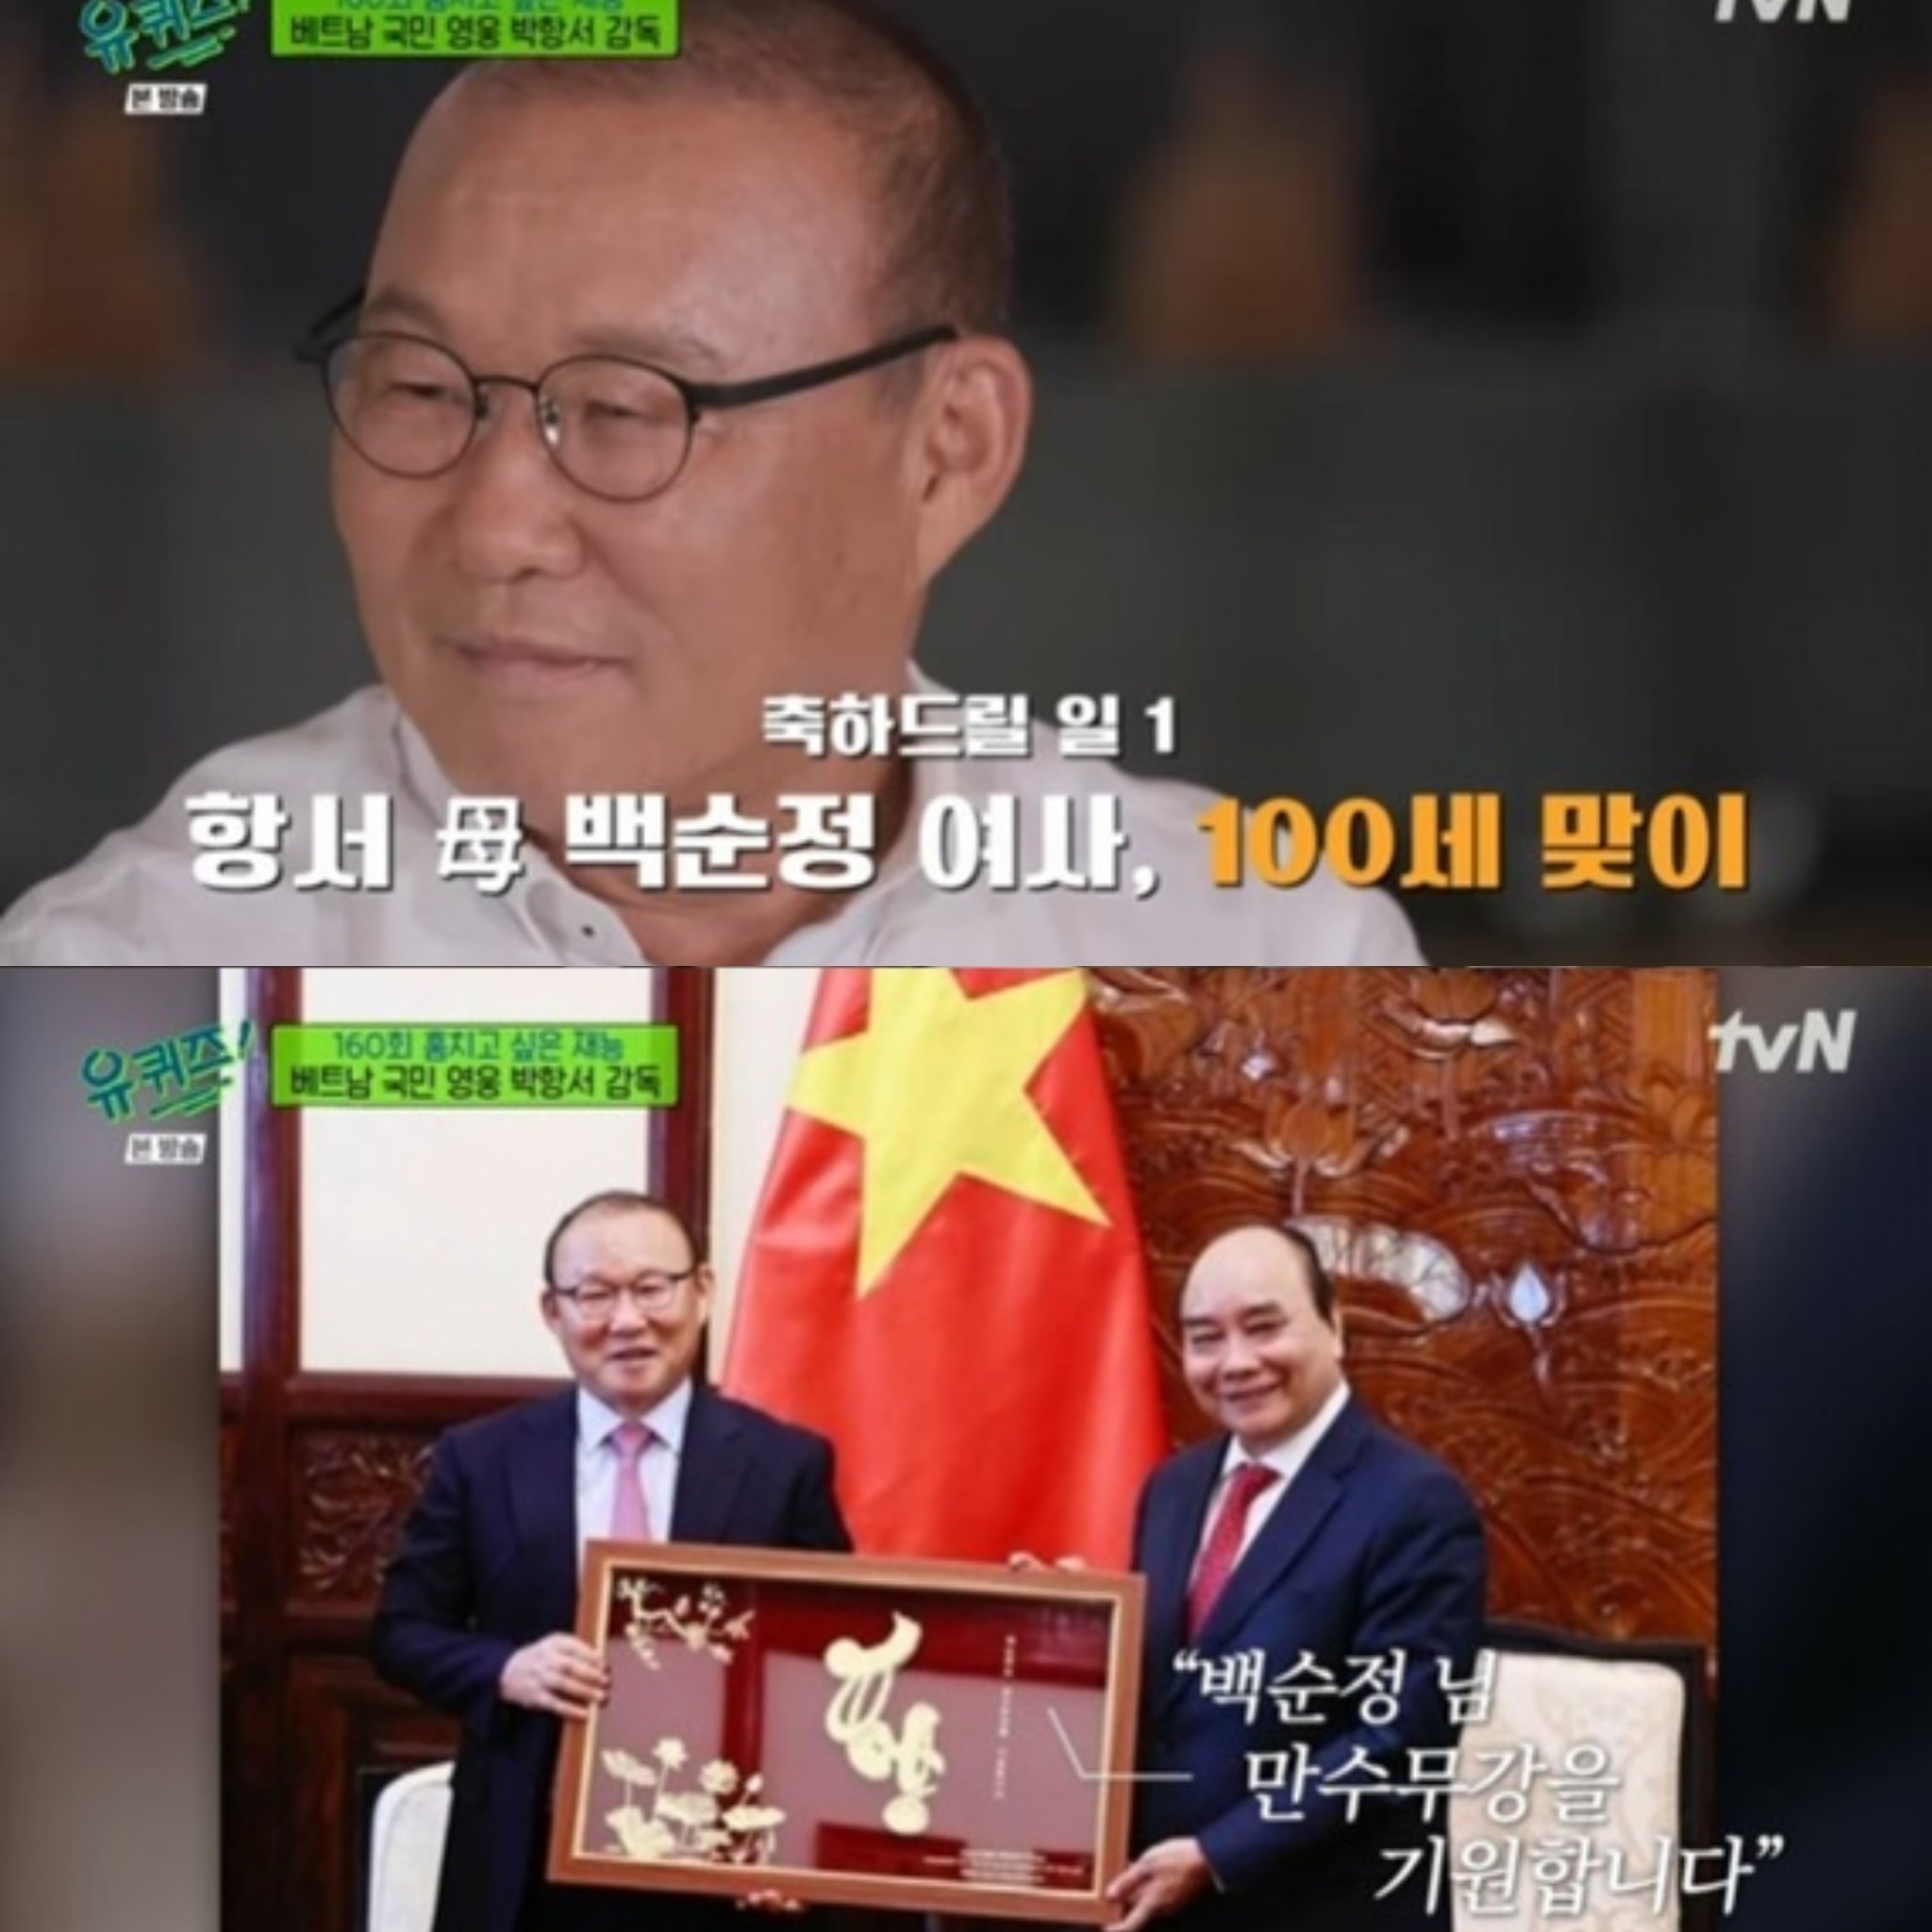 HLV Park Hang Seo chia sẻ niềm vui và thói quen chỉ có khi sang Việt Nam - 2